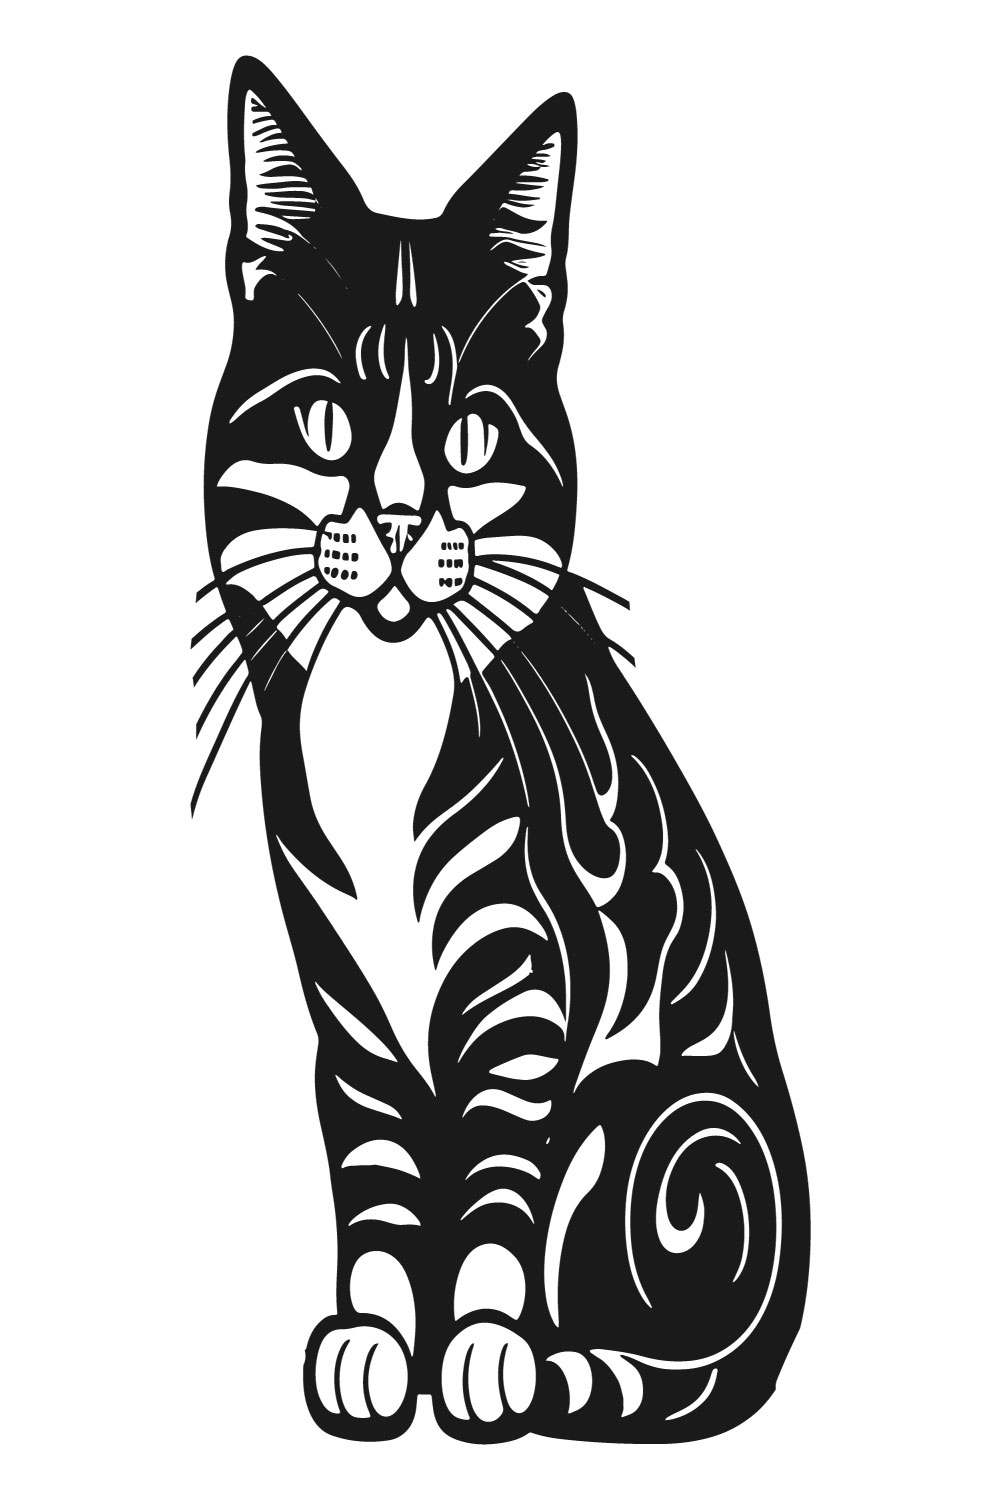 5 Cats Editable Vector Illustration Bundle Set pinterest preview image.